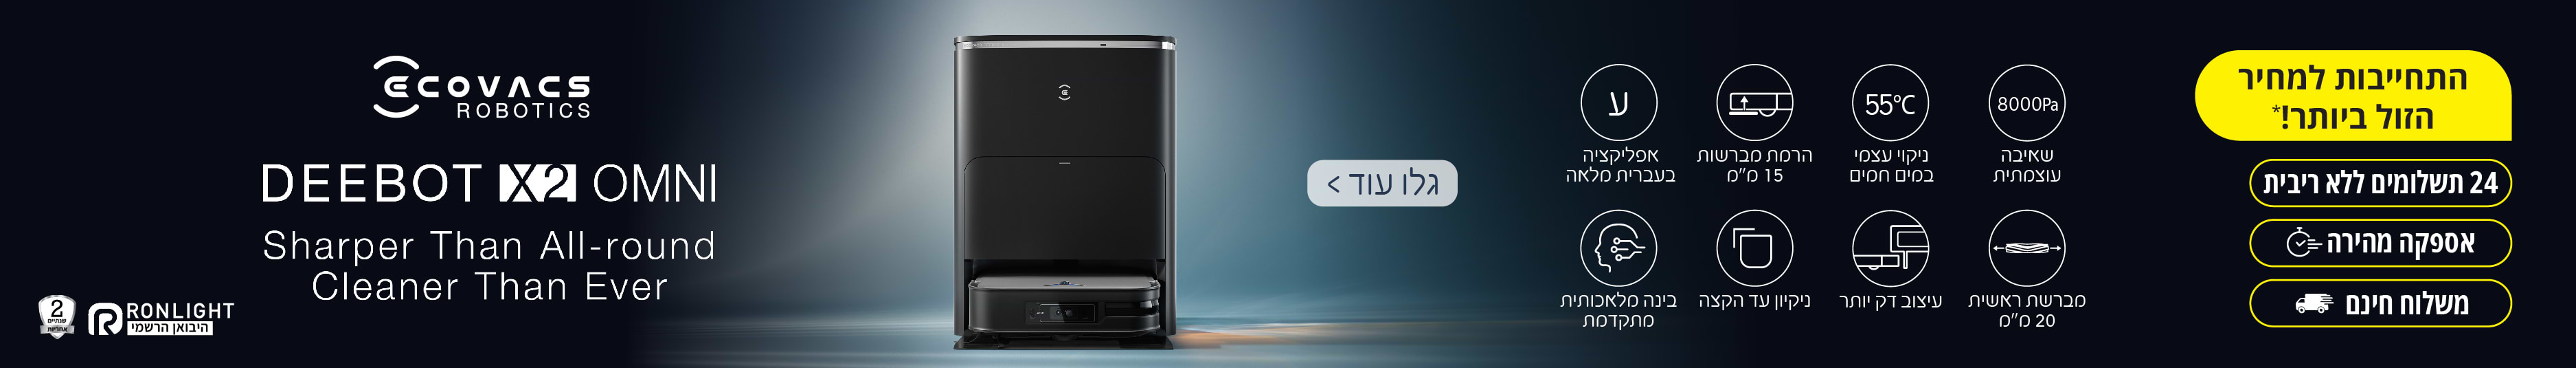 אספקה תוך יום! מזמינים ומקבלים - מחסני חשמל הרשה הזולה והמשתלמת בישראל מגוון ענק של מוצרים באספקה מיידית